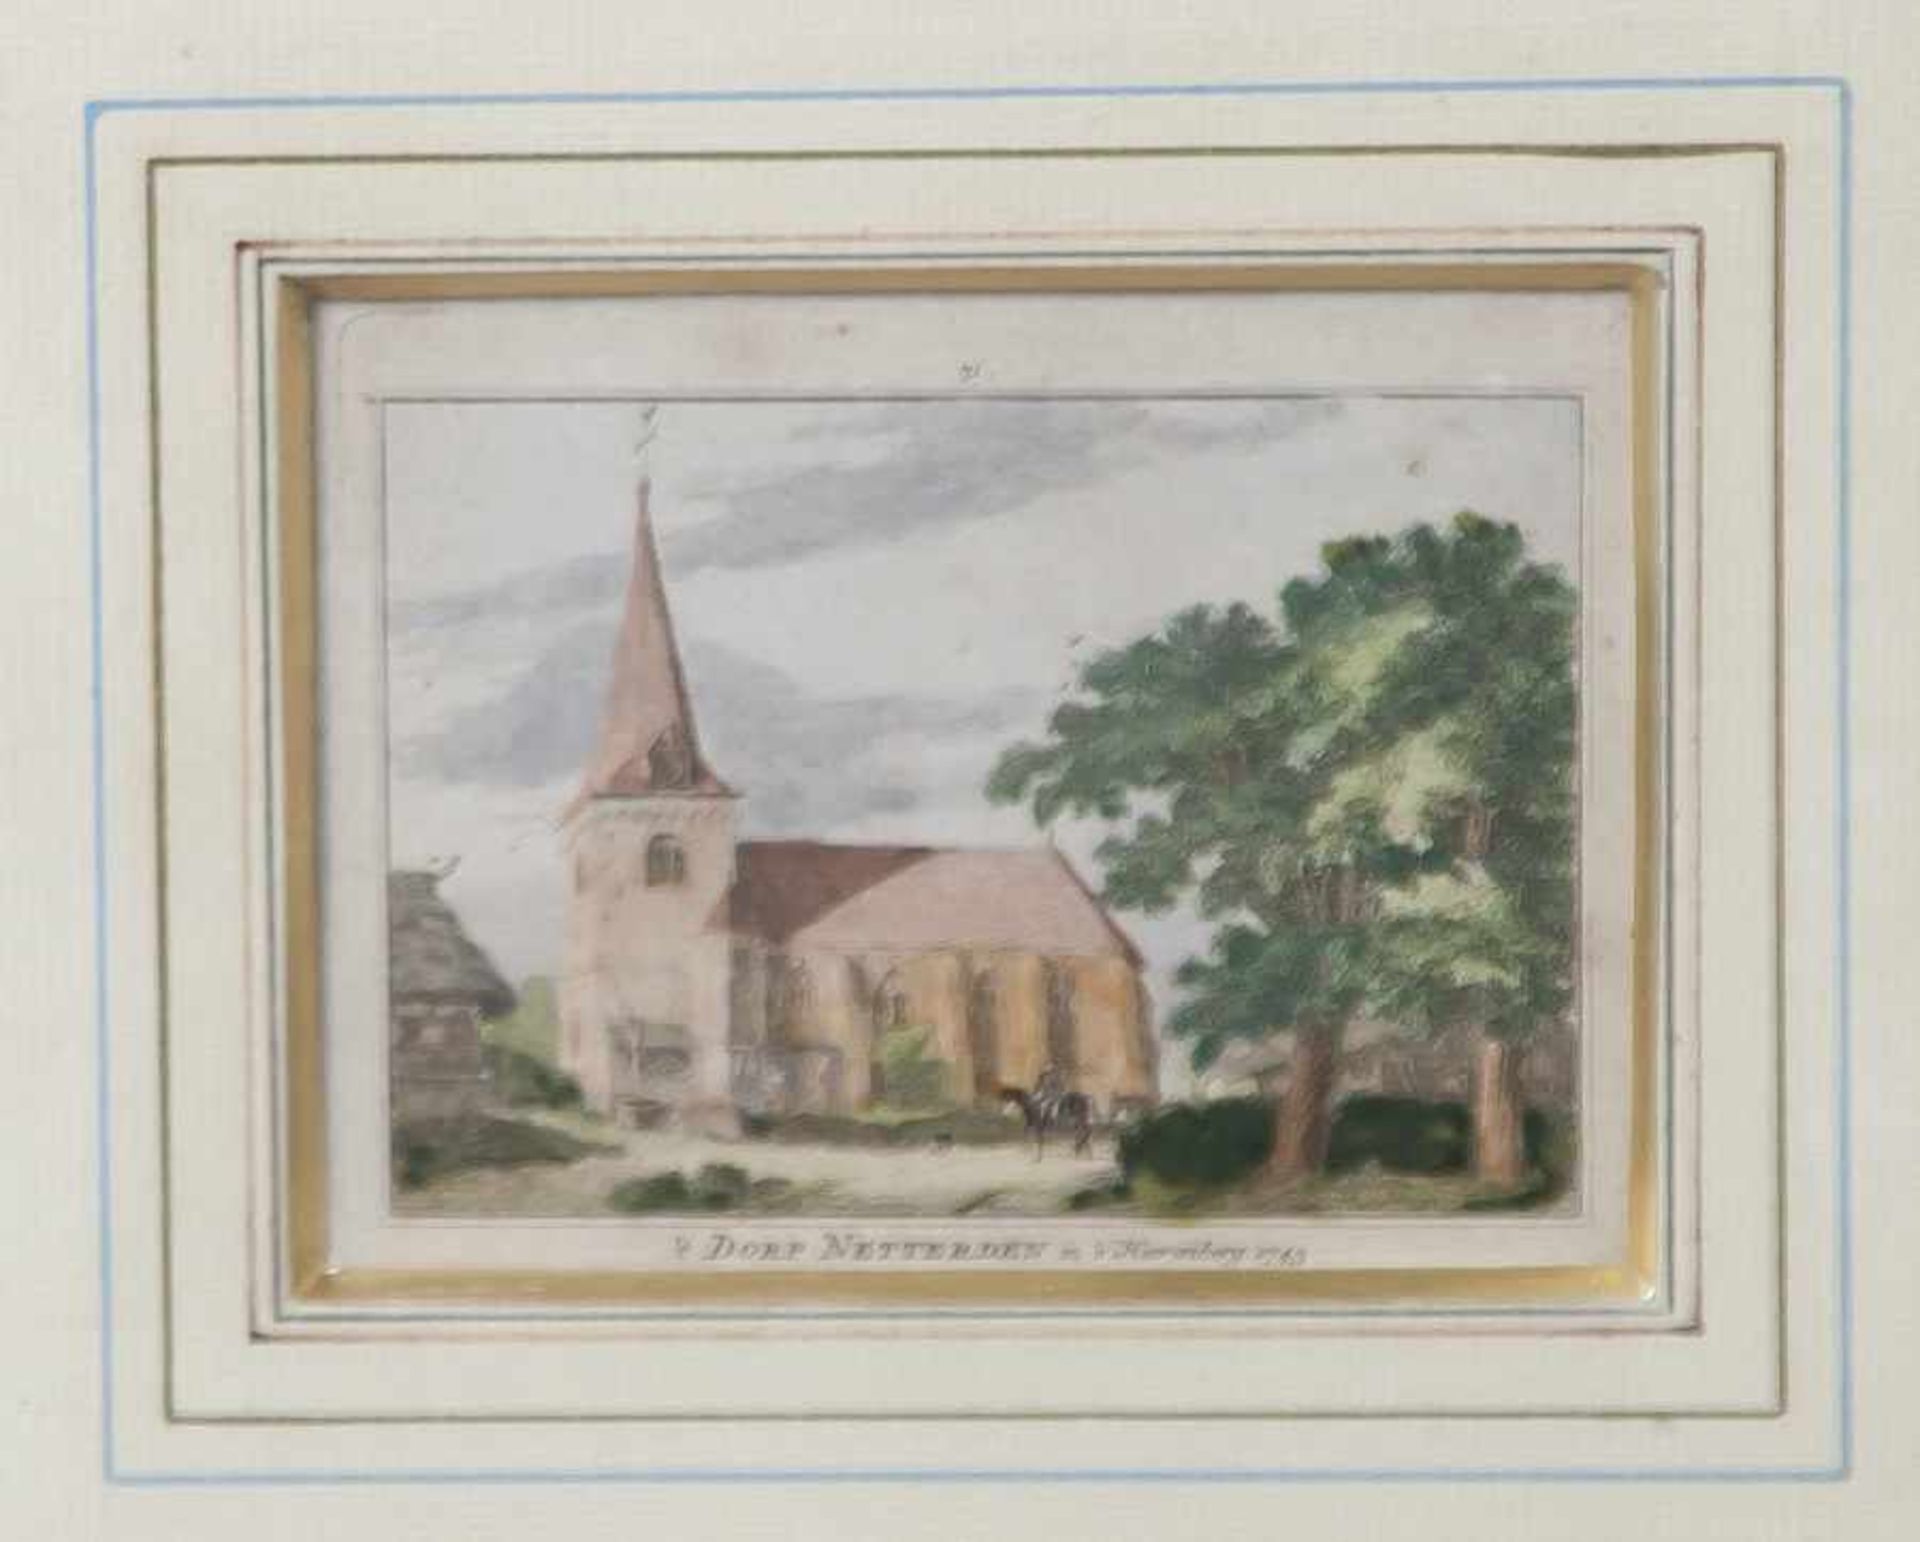 Unbekannter Künstler, "Dorf Netterden in's Herenberg 1743", kolorierter Stich. Ca. 9 x 11cm. Unknown